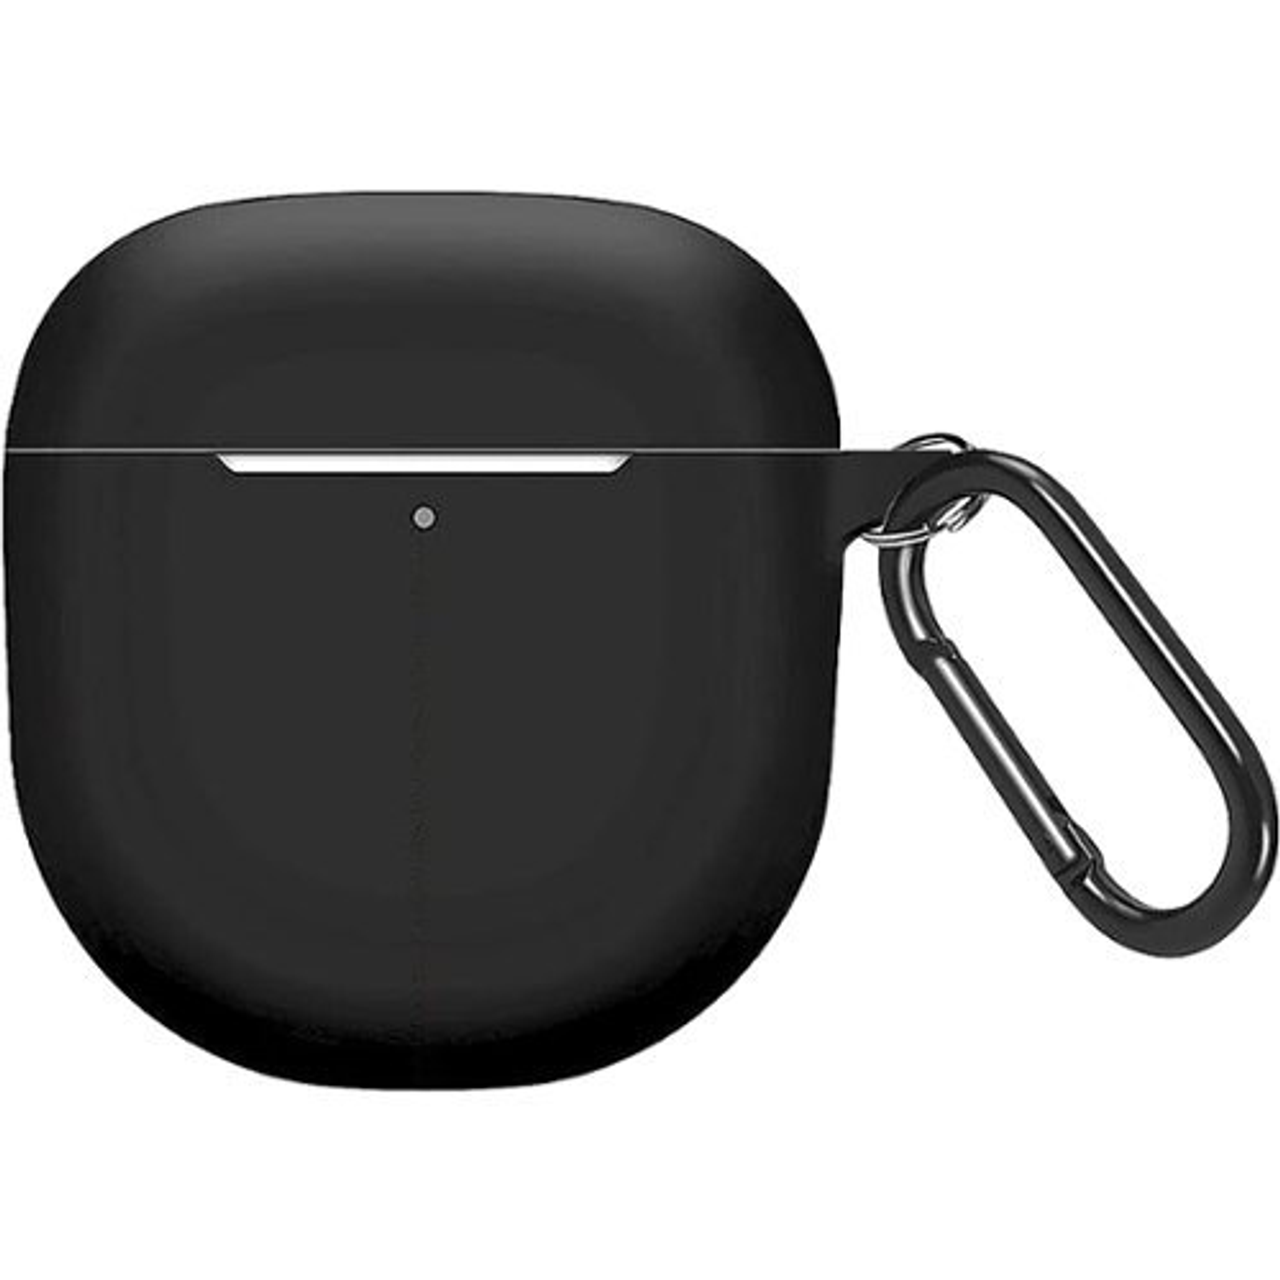 SaharaCase - Anti-Slip Silicone Case for Bose QuietComfort II Headphones - Black